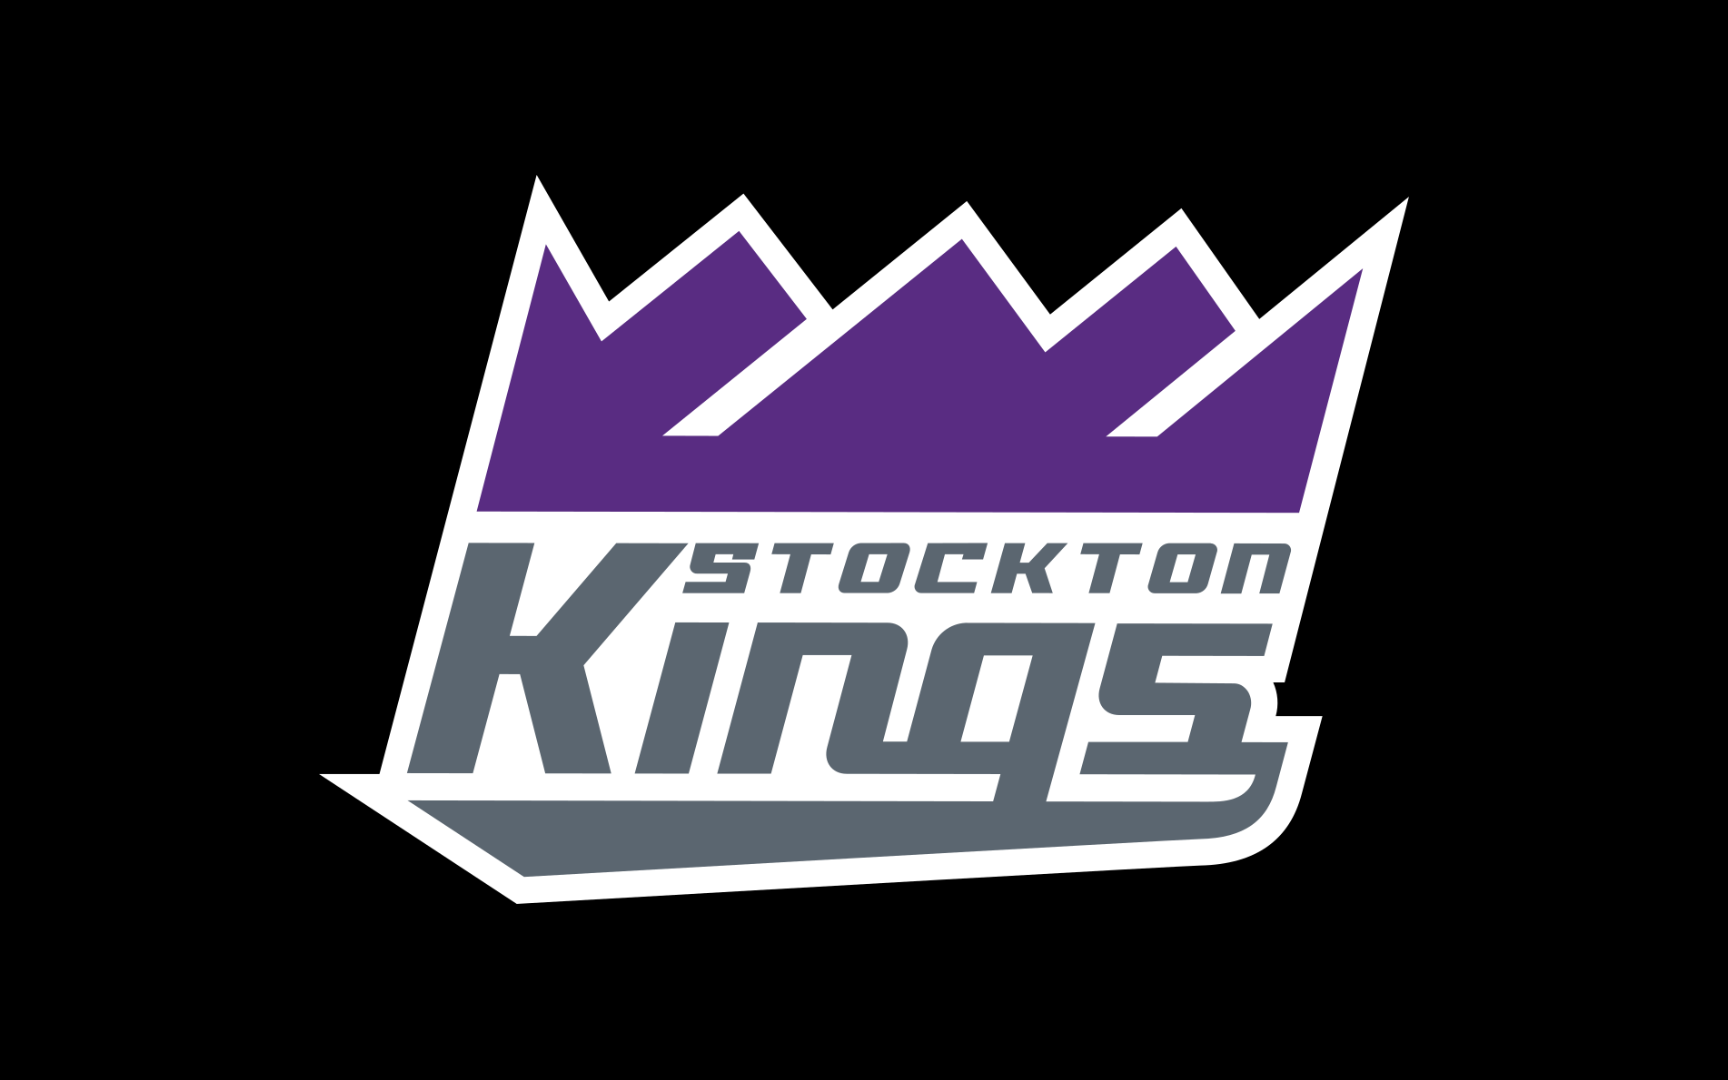 Stockton Kings vs Salt Lake City Stars